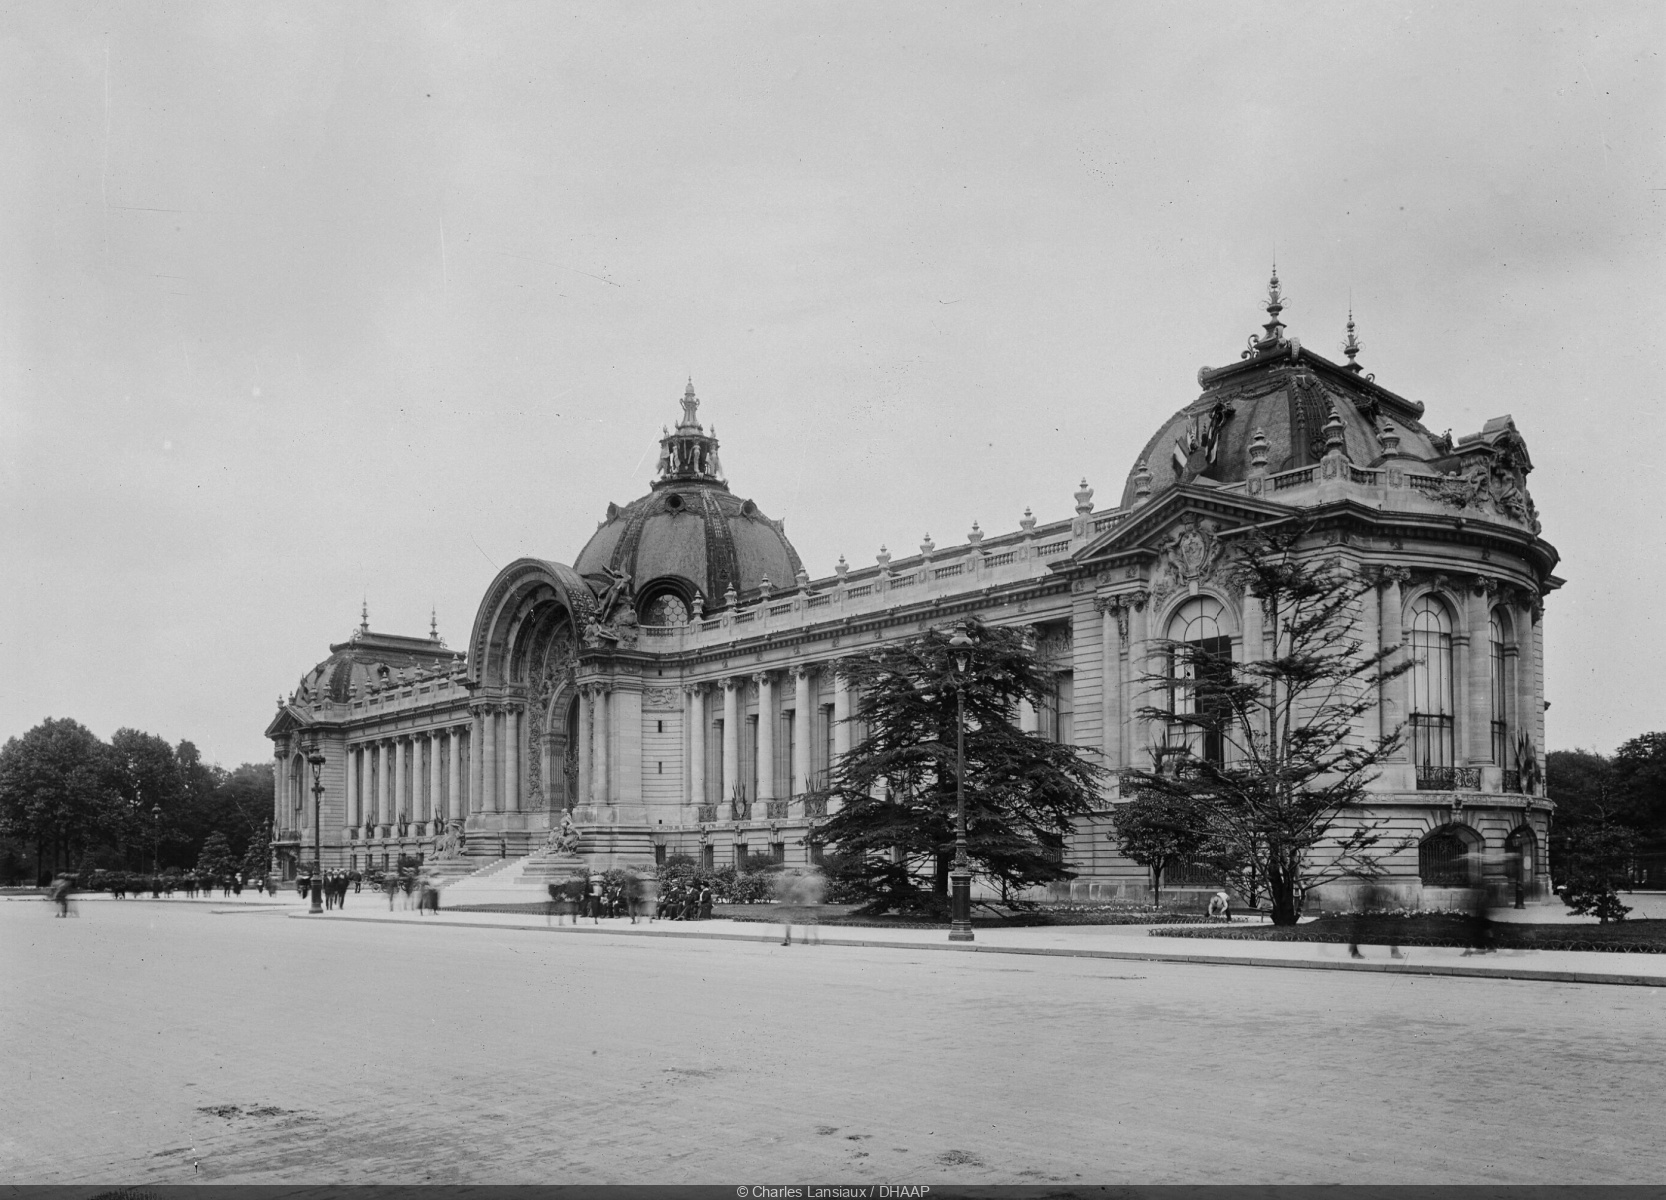 Le Paris de la Modernité, the historical exhibition at the Petit